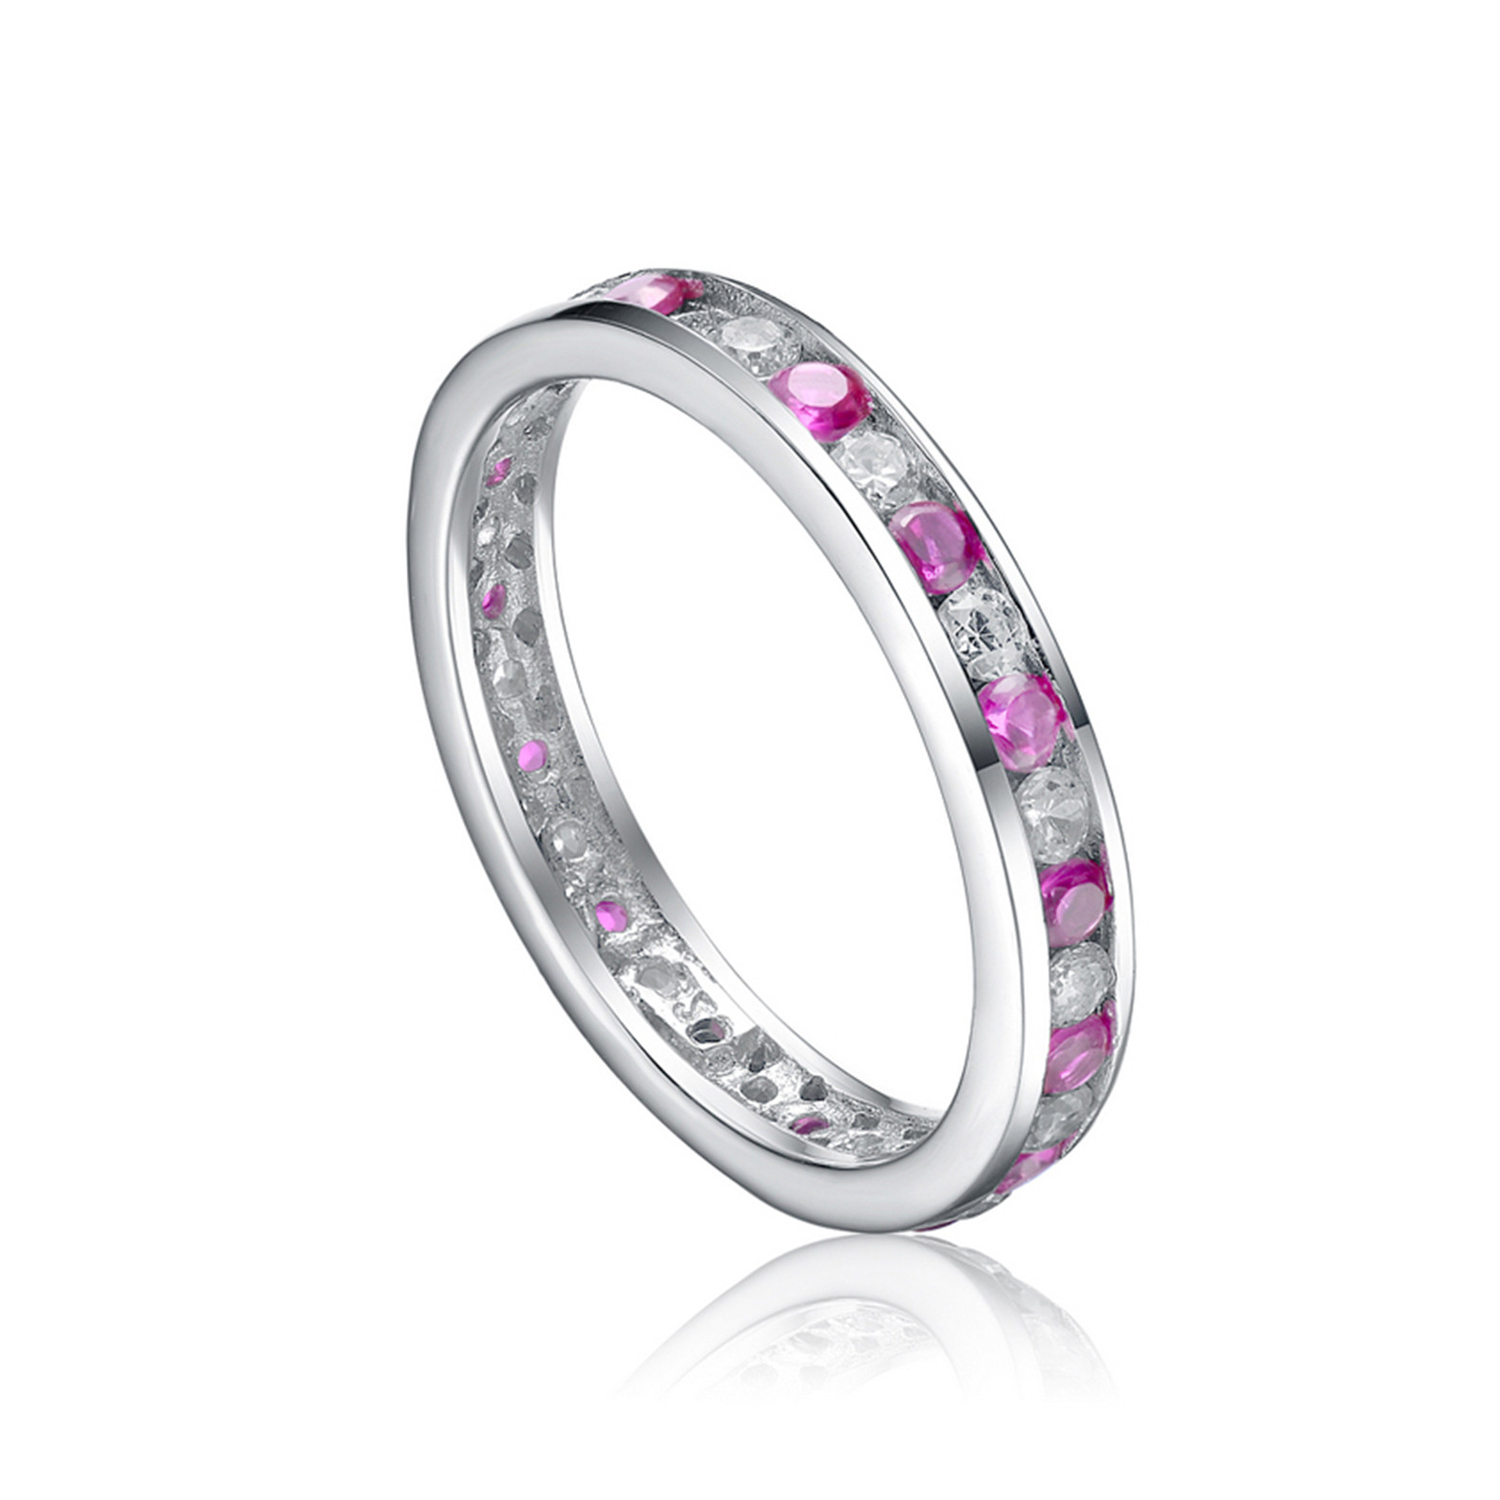 Sterling silver ring eternity wedding engagement finger ring design for women